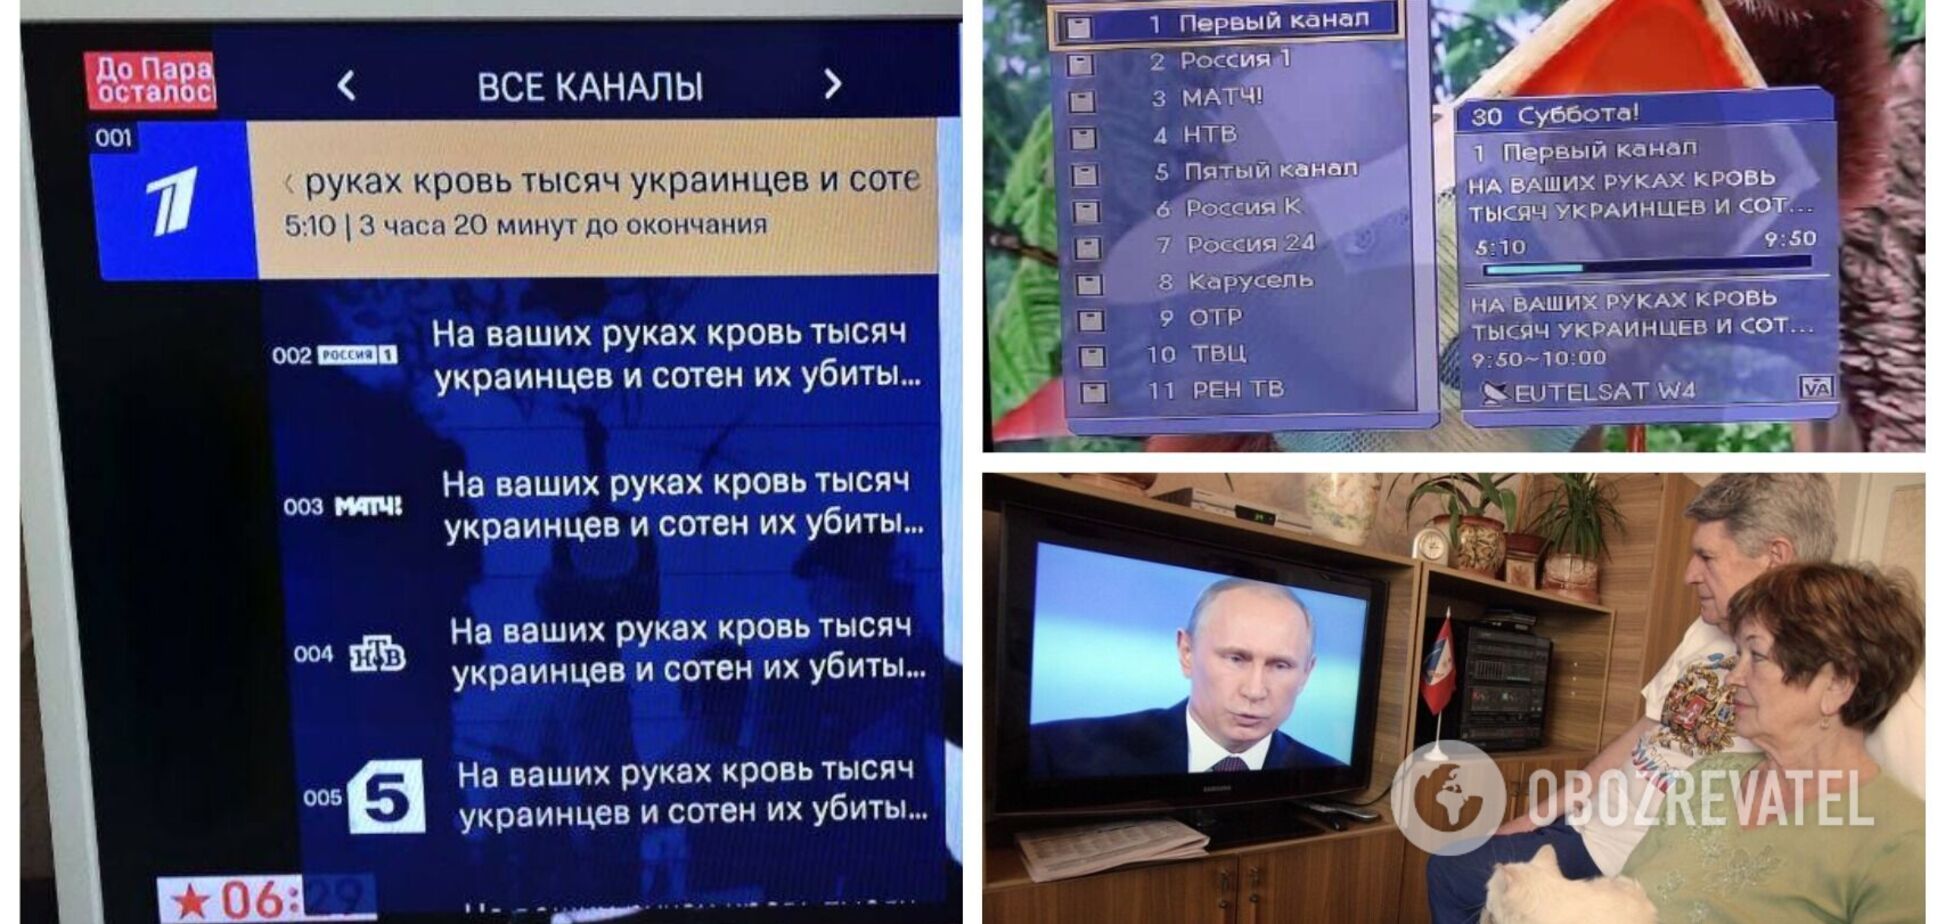 'На ваших руках кров': у Росії на 9 травня зламали мережу мовлення ТВ-каналів та нагадали про війну проти України. Фото